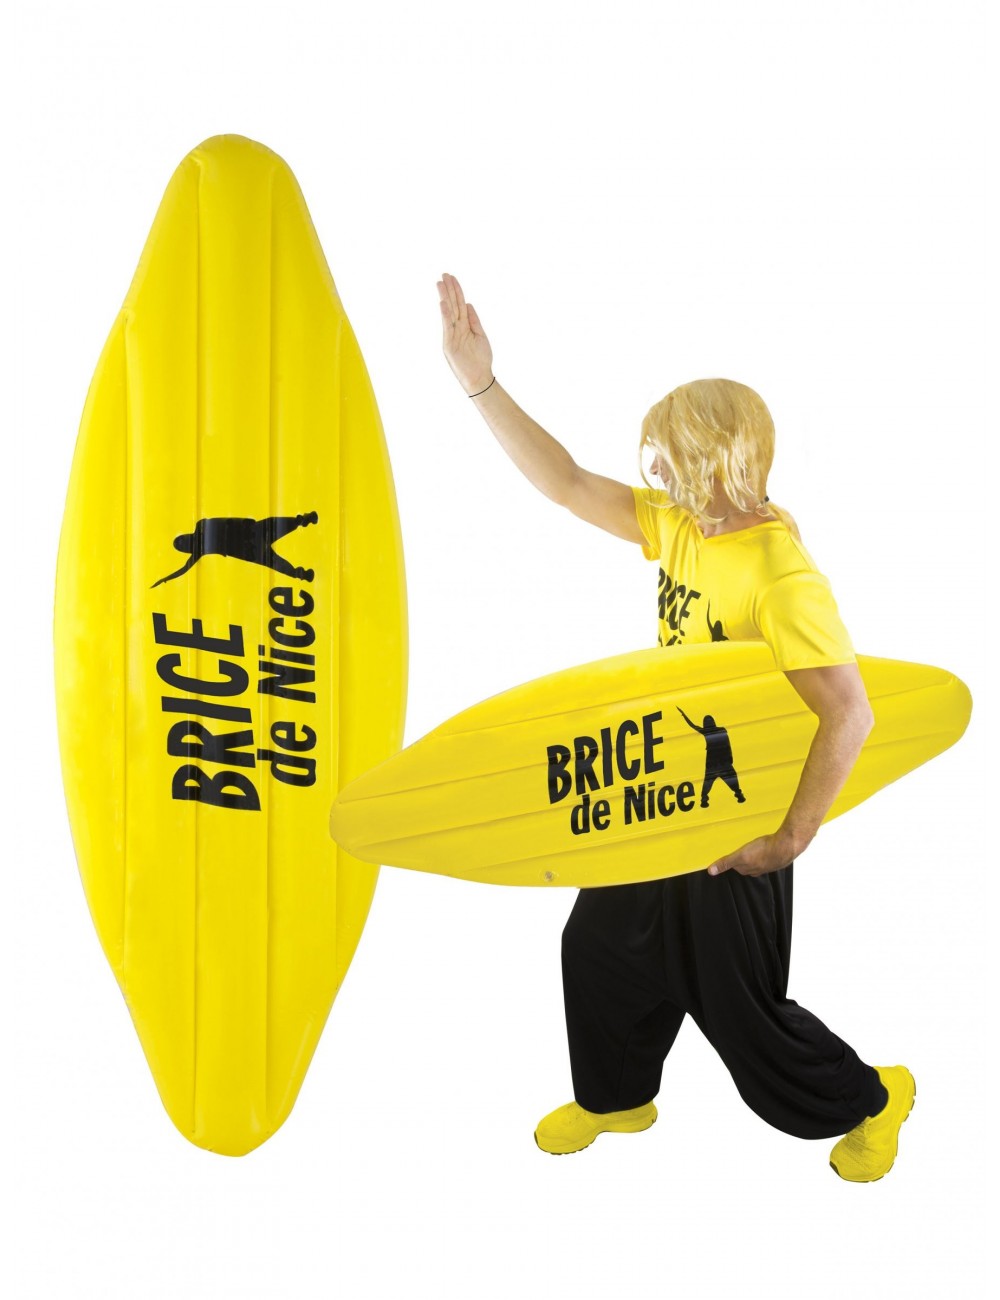 Inflatable Surfboard Brice de Nice™